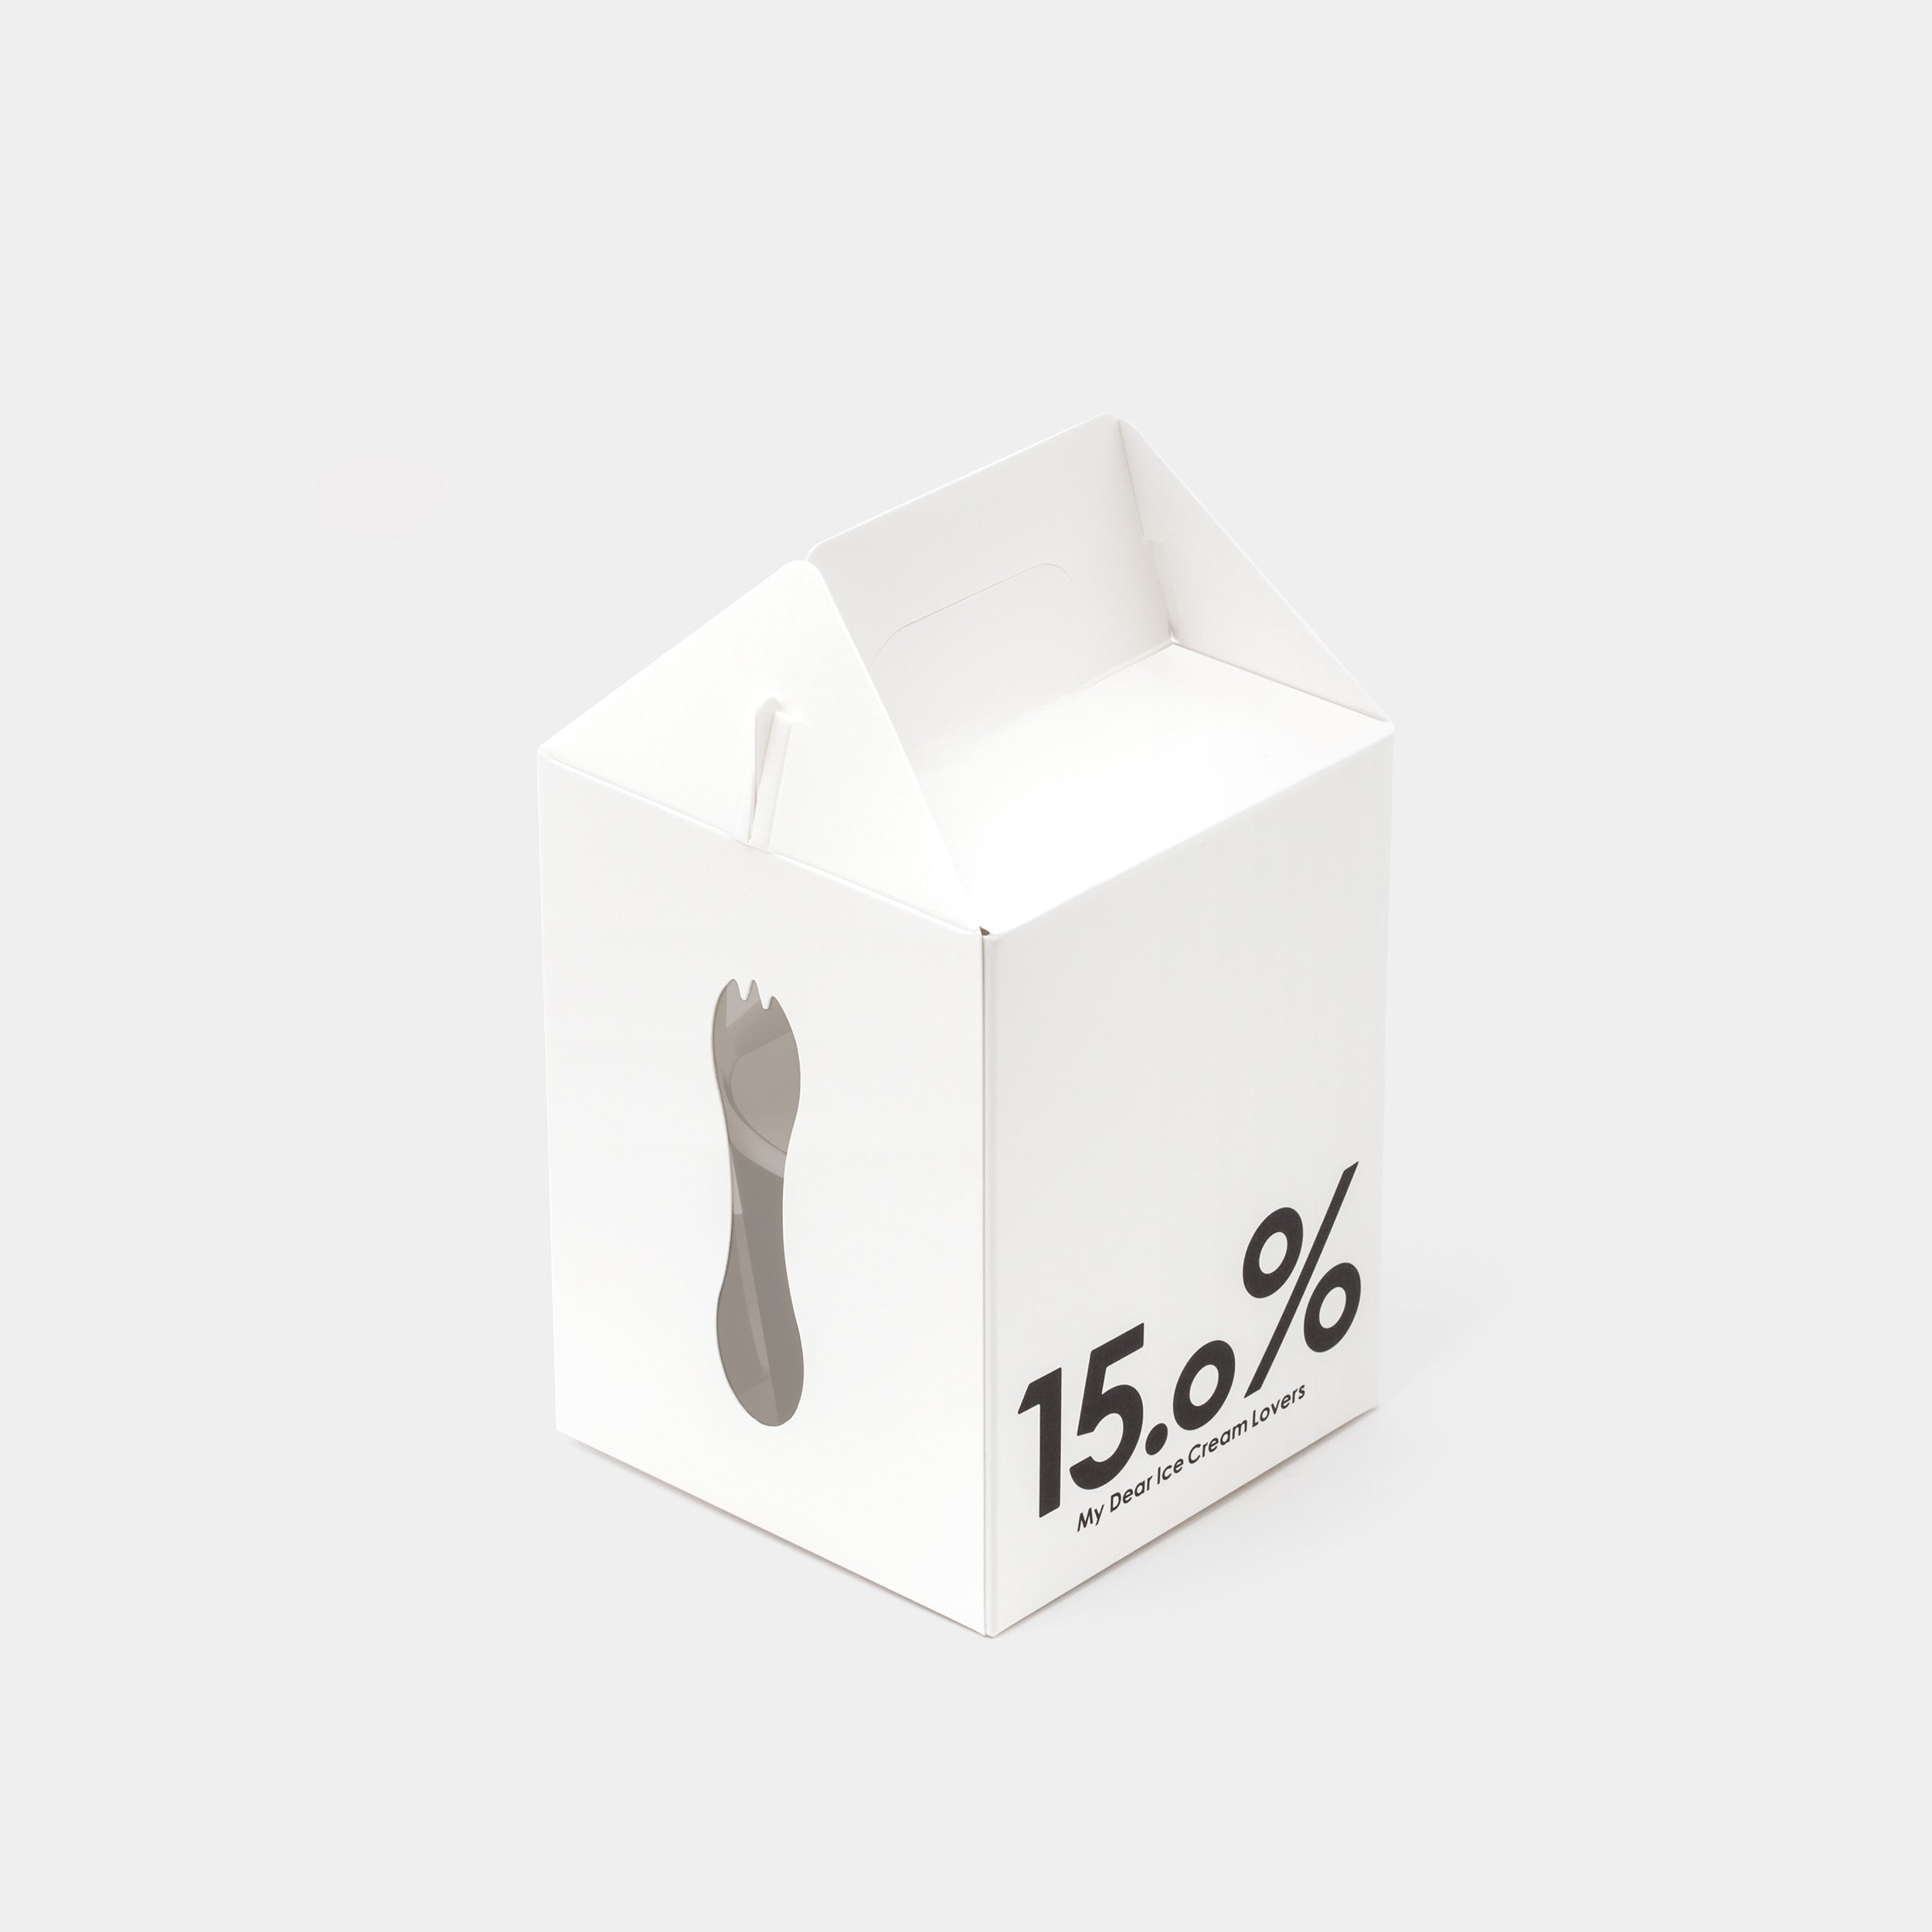 15.0 % Ice Cream Spoon with box